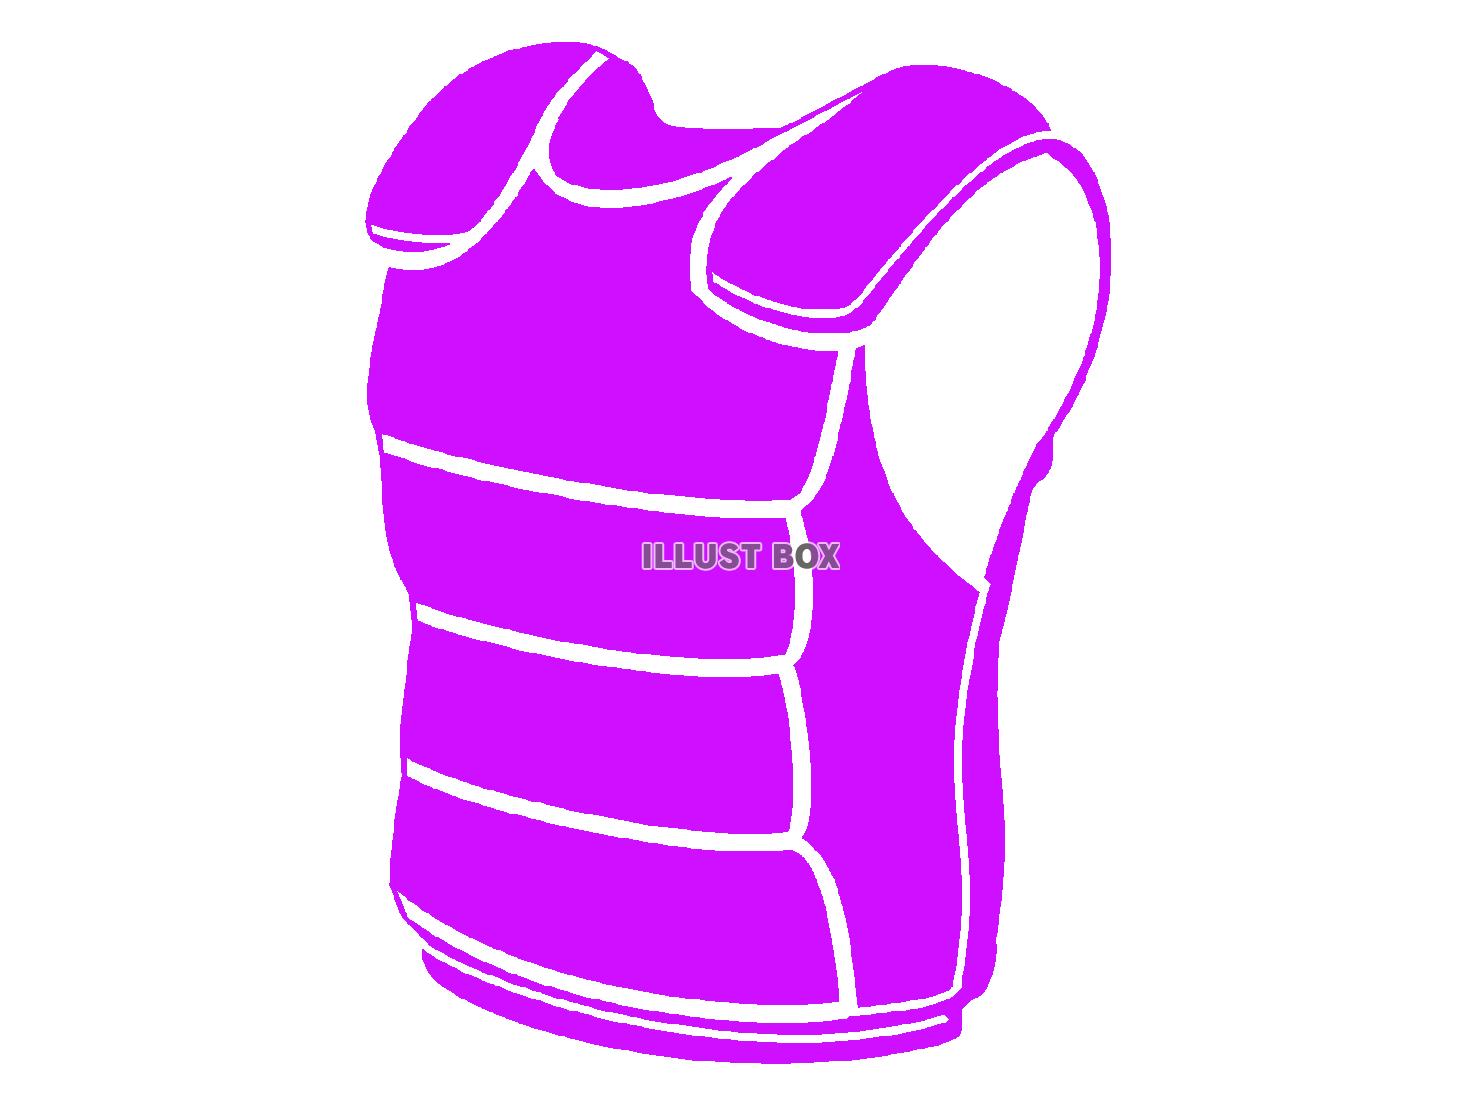 紫色の防弾チョッキのシルエット